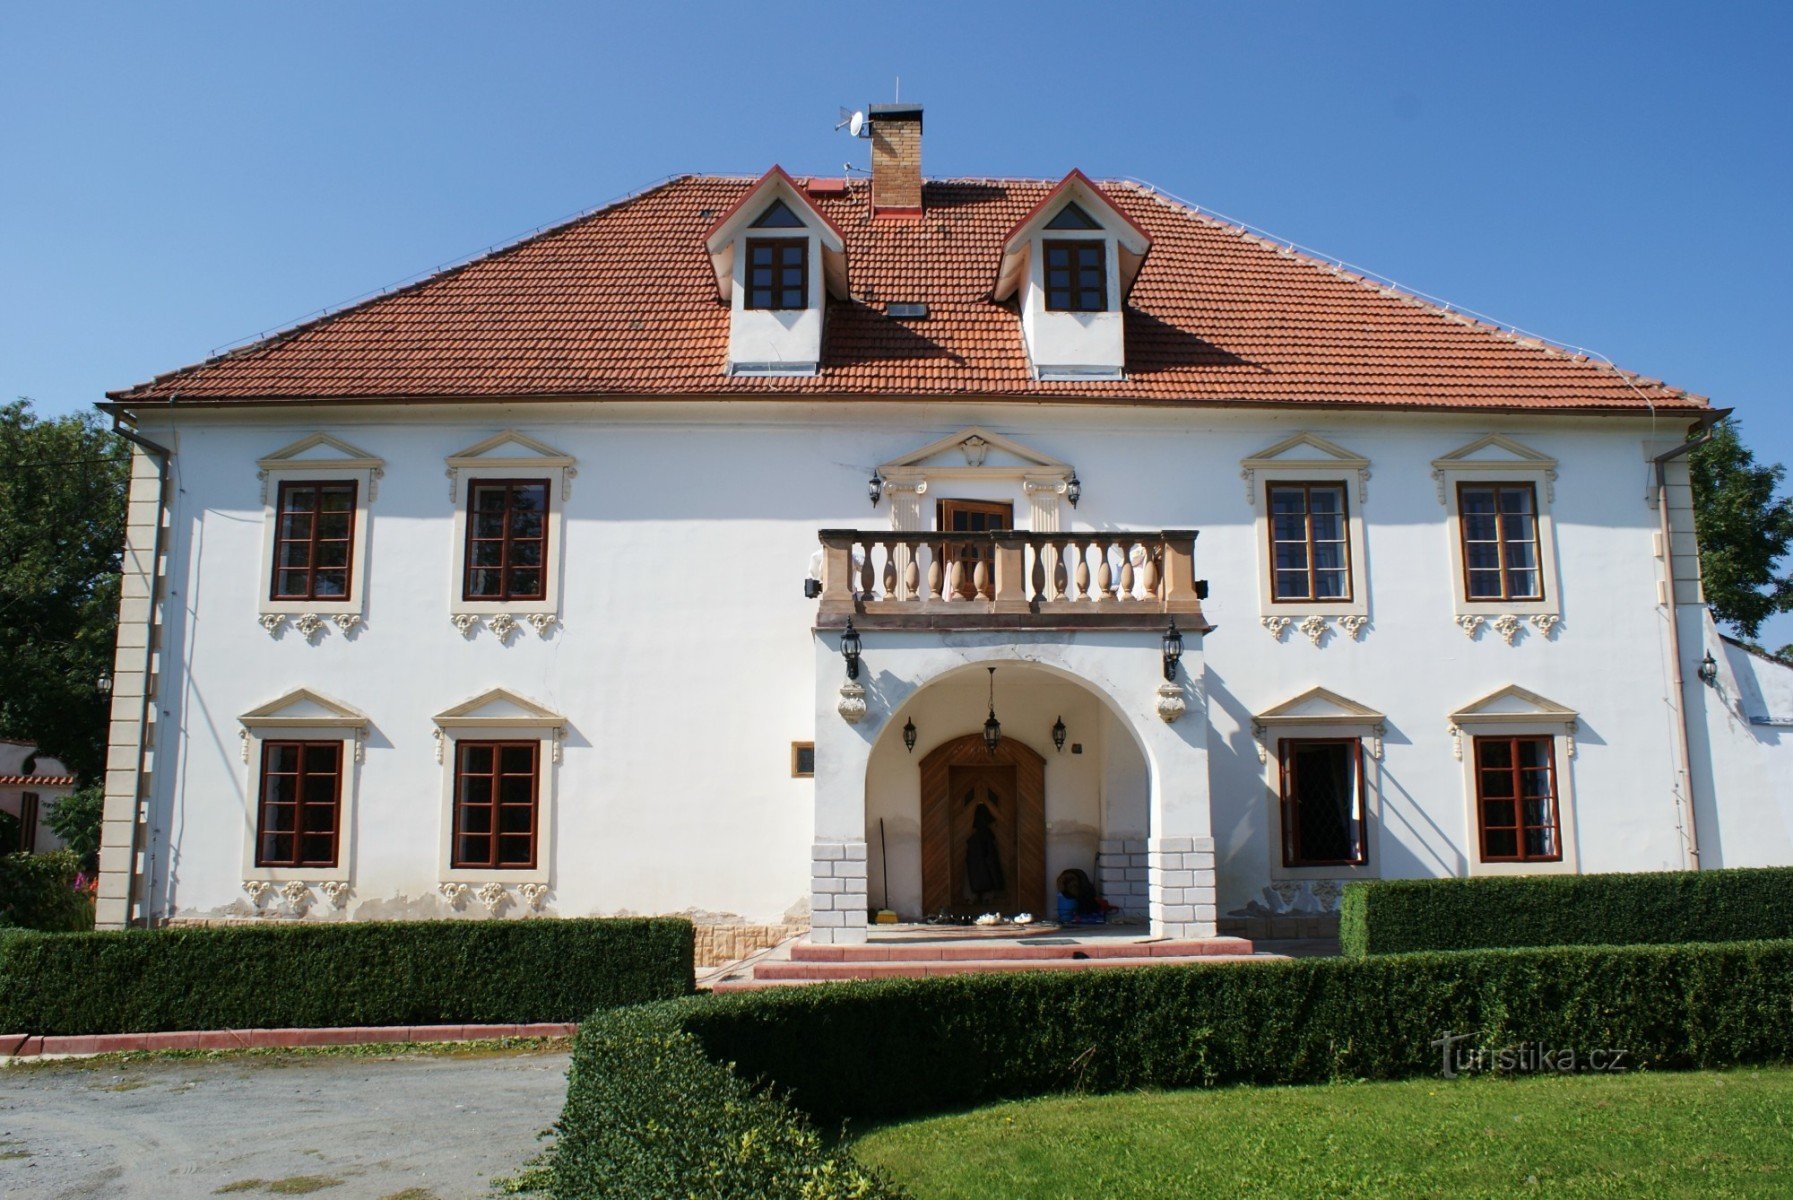 château baroque - Horní dvůr